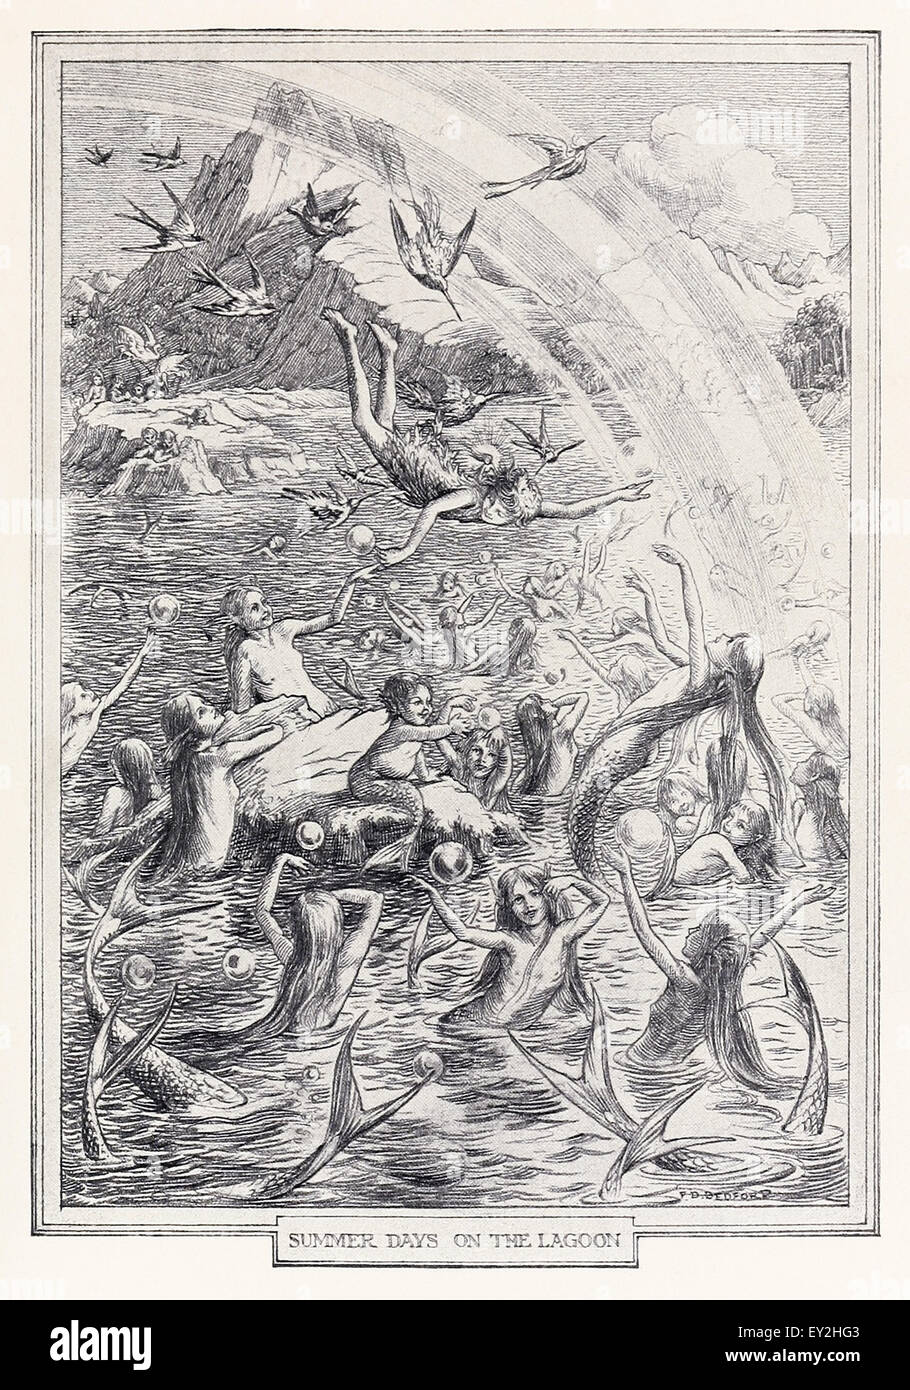 Jours d'été sur la lagune' du chapitre 8 intitulé "Peter & Wendy' par J.M. Barrie (1860-1937), illustration par F.D. Bedford (1864-1954). Voir la description pour plus d'informations. Banque D'Images